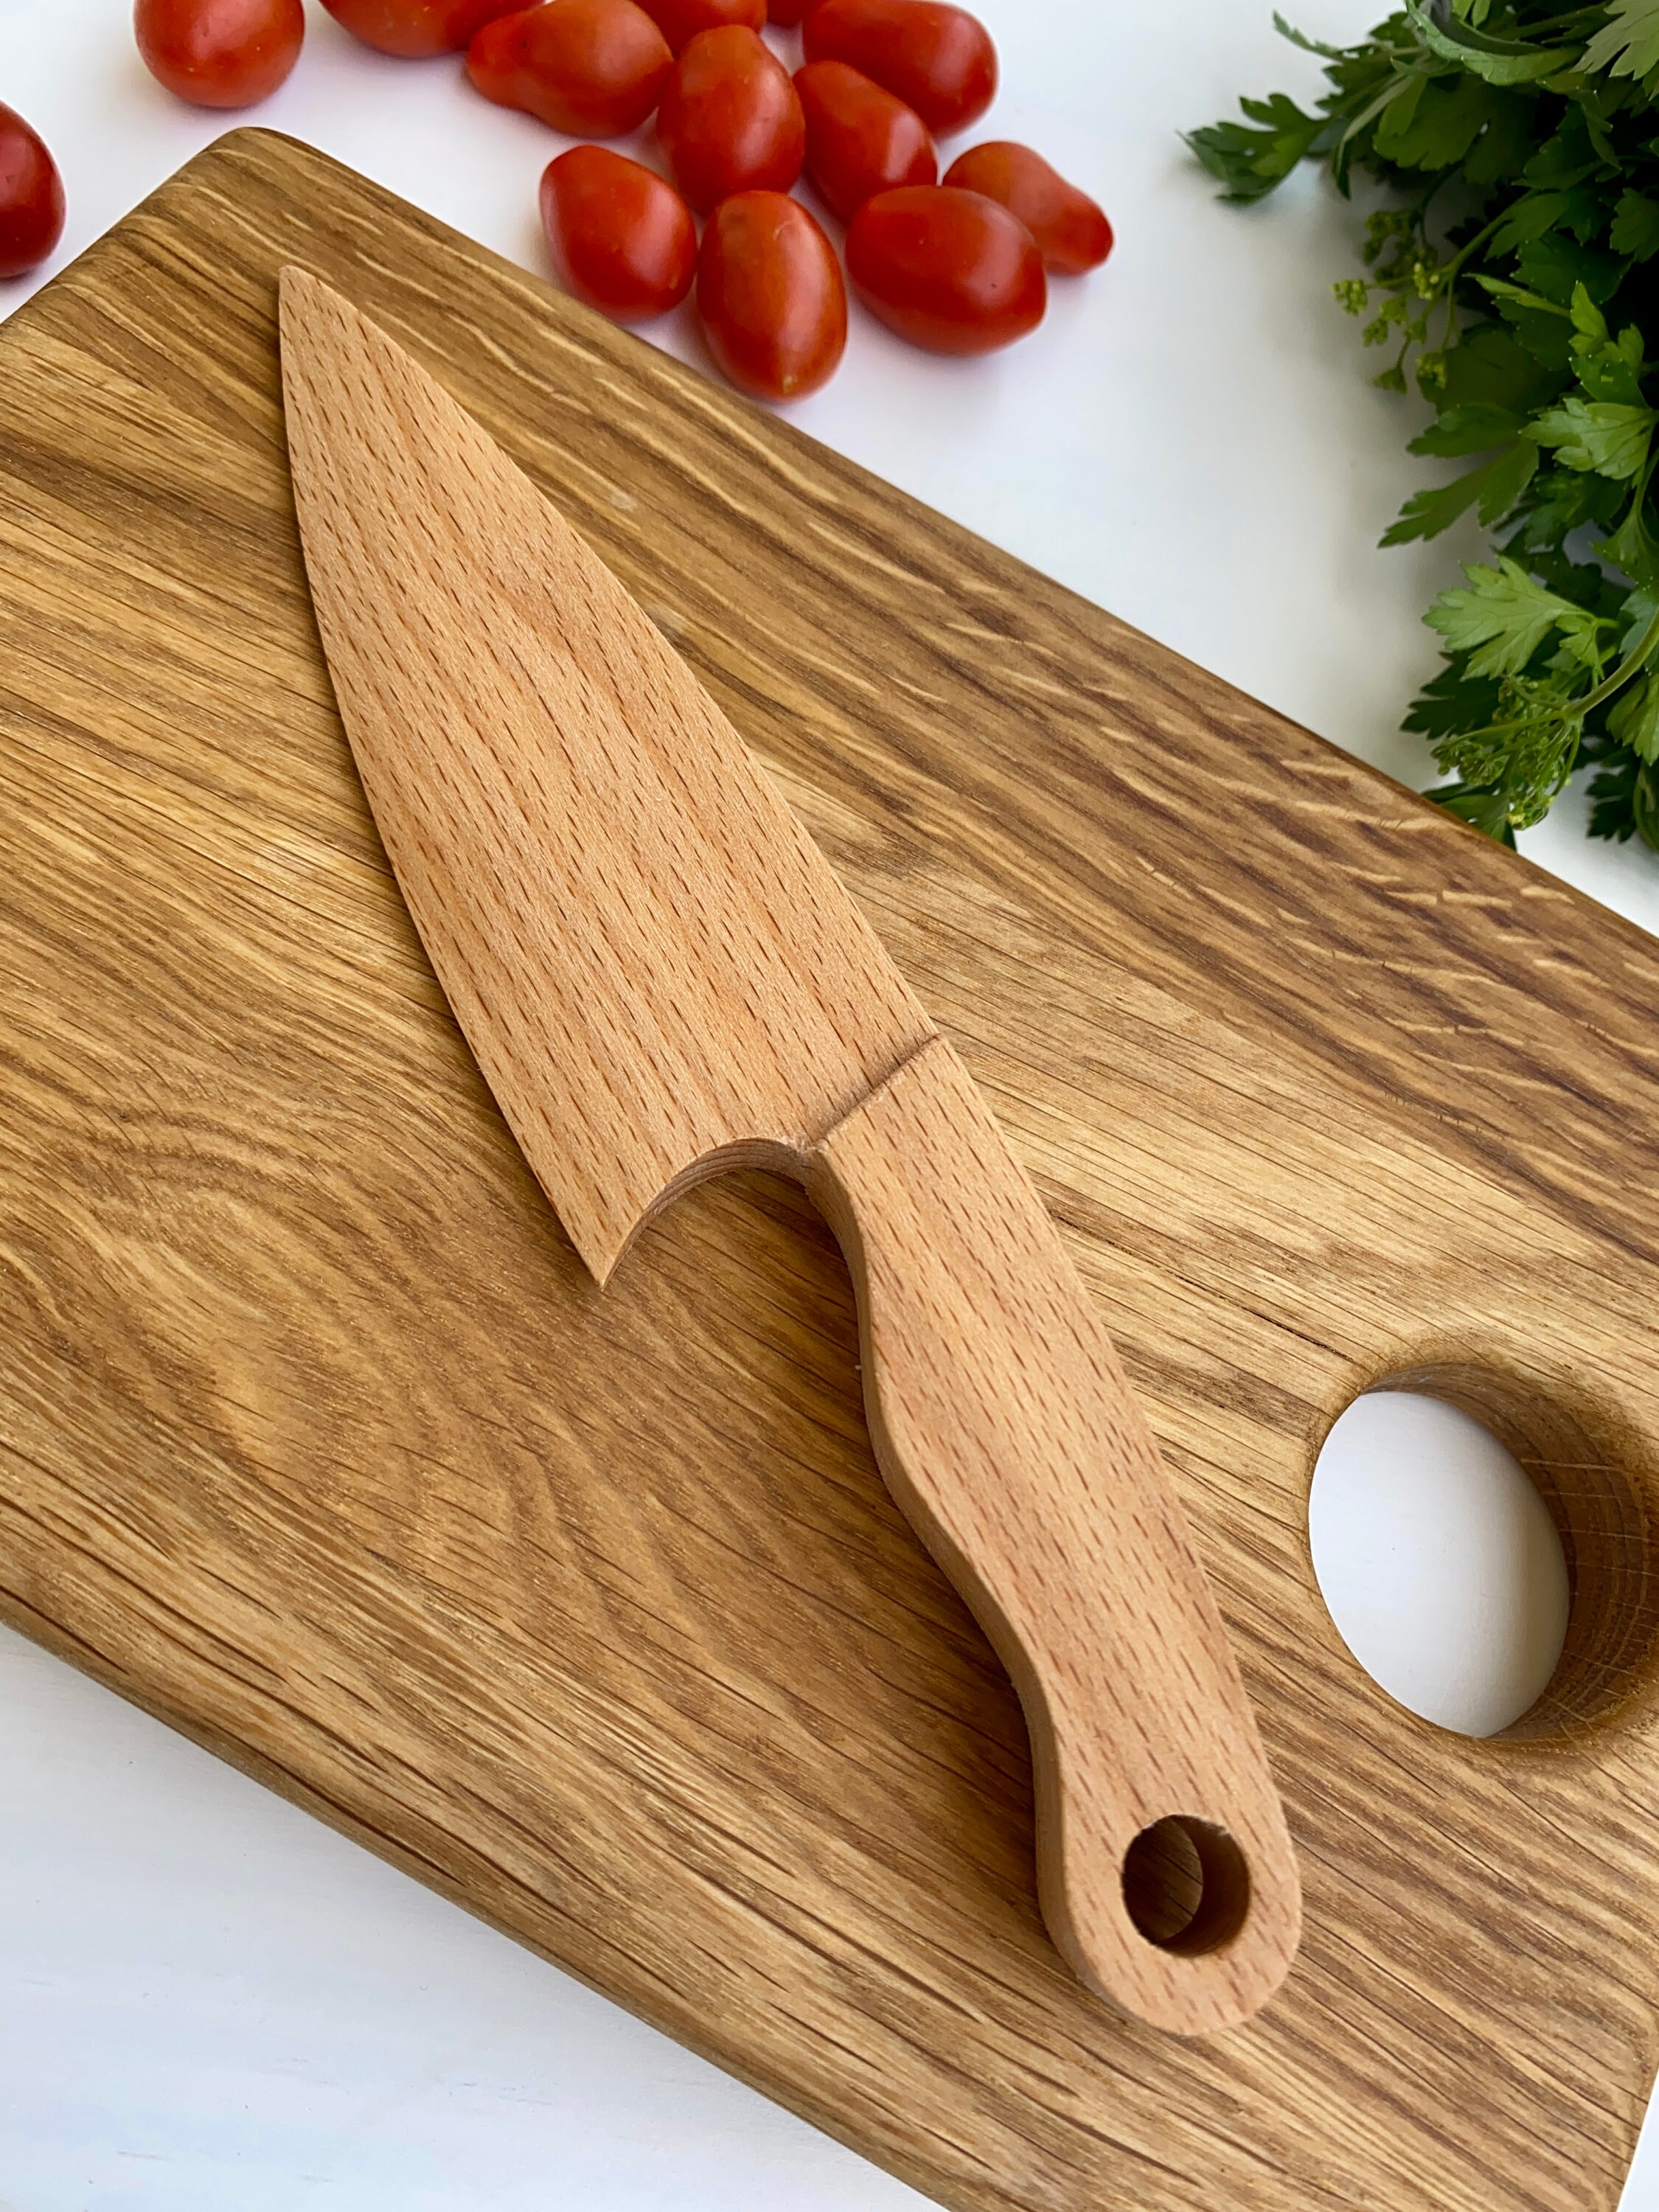  FGSAEOR Juego de cuchillos Montessori para niños pequeños (6  unidades), herramientas de cocina para cocinar y cortar cuchillos, cuchillo  de plástico seguro para niños, incluye cuchillo de madera, cuchillo picador  ondulado